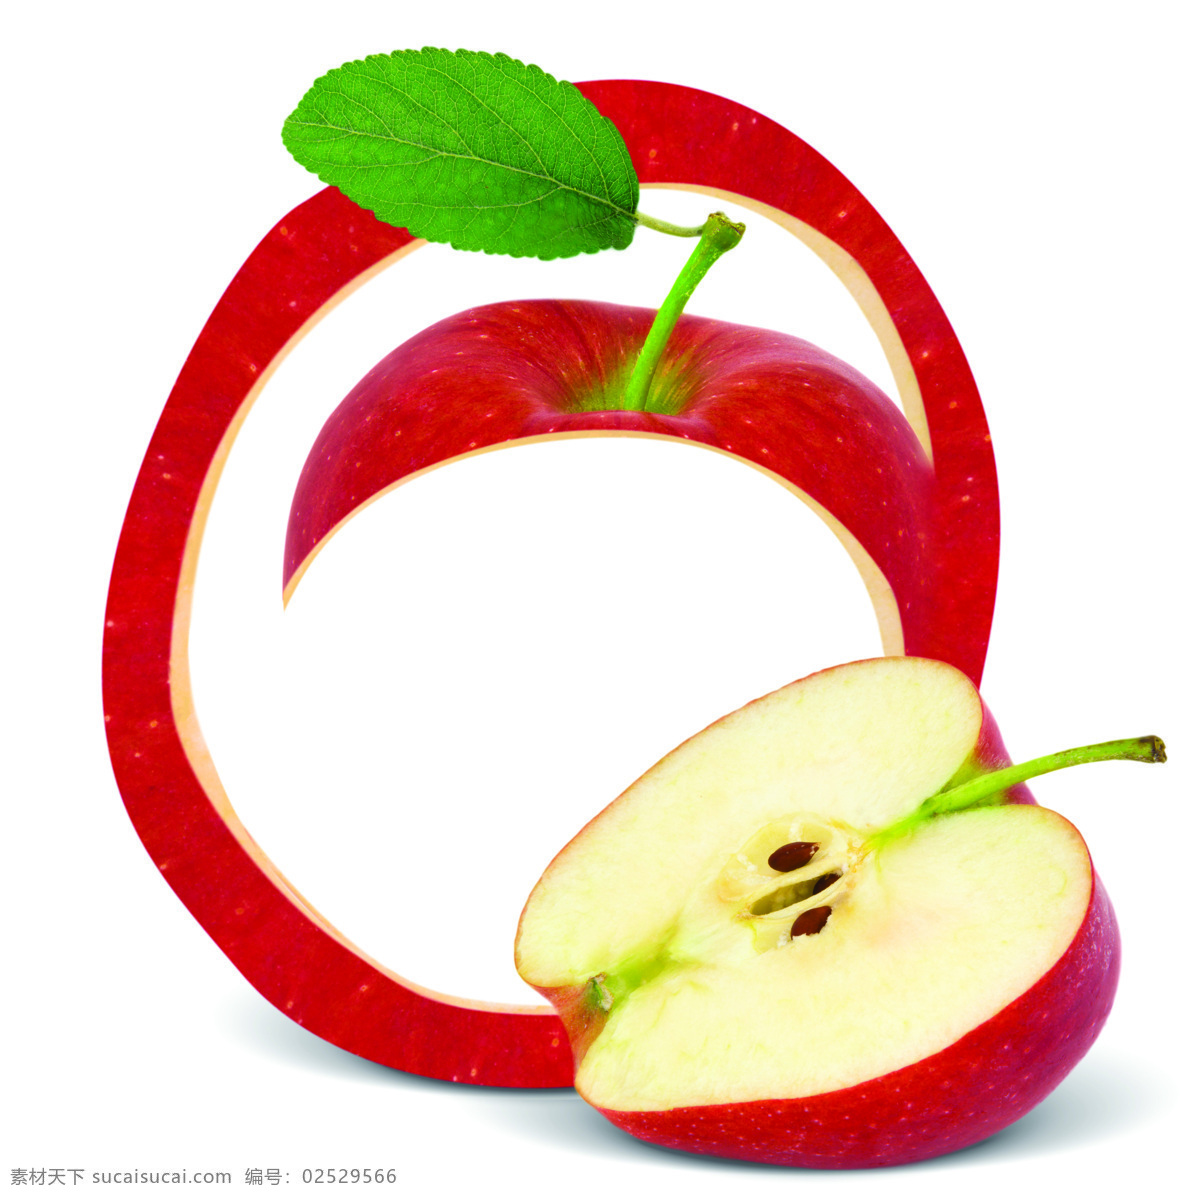 苹果 皮 新鲜 果皮 新鲜水果 水果摄影 果实 红苹果 苹果图片 餐饮美食